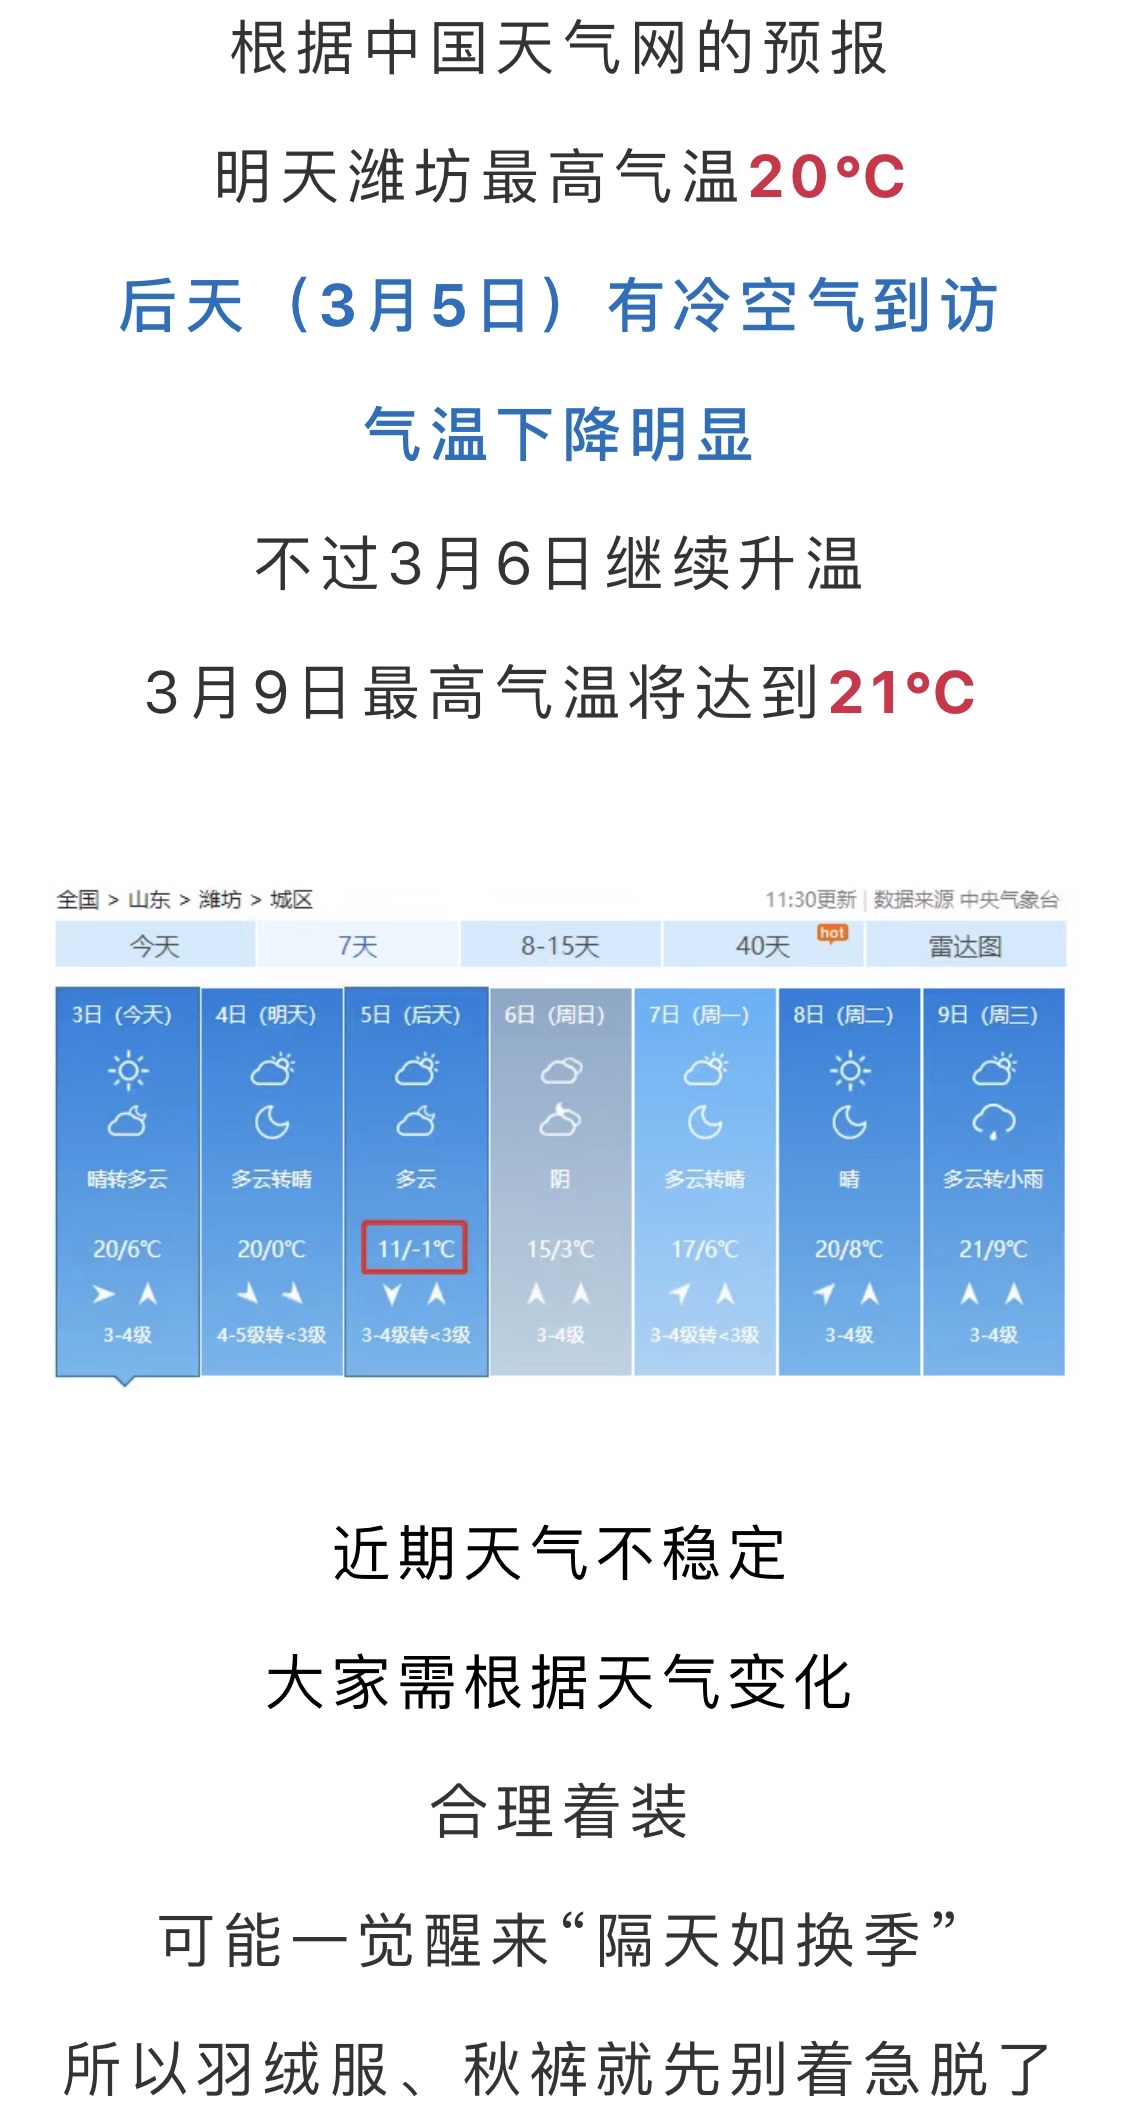 21!潍坊最新天气预报!